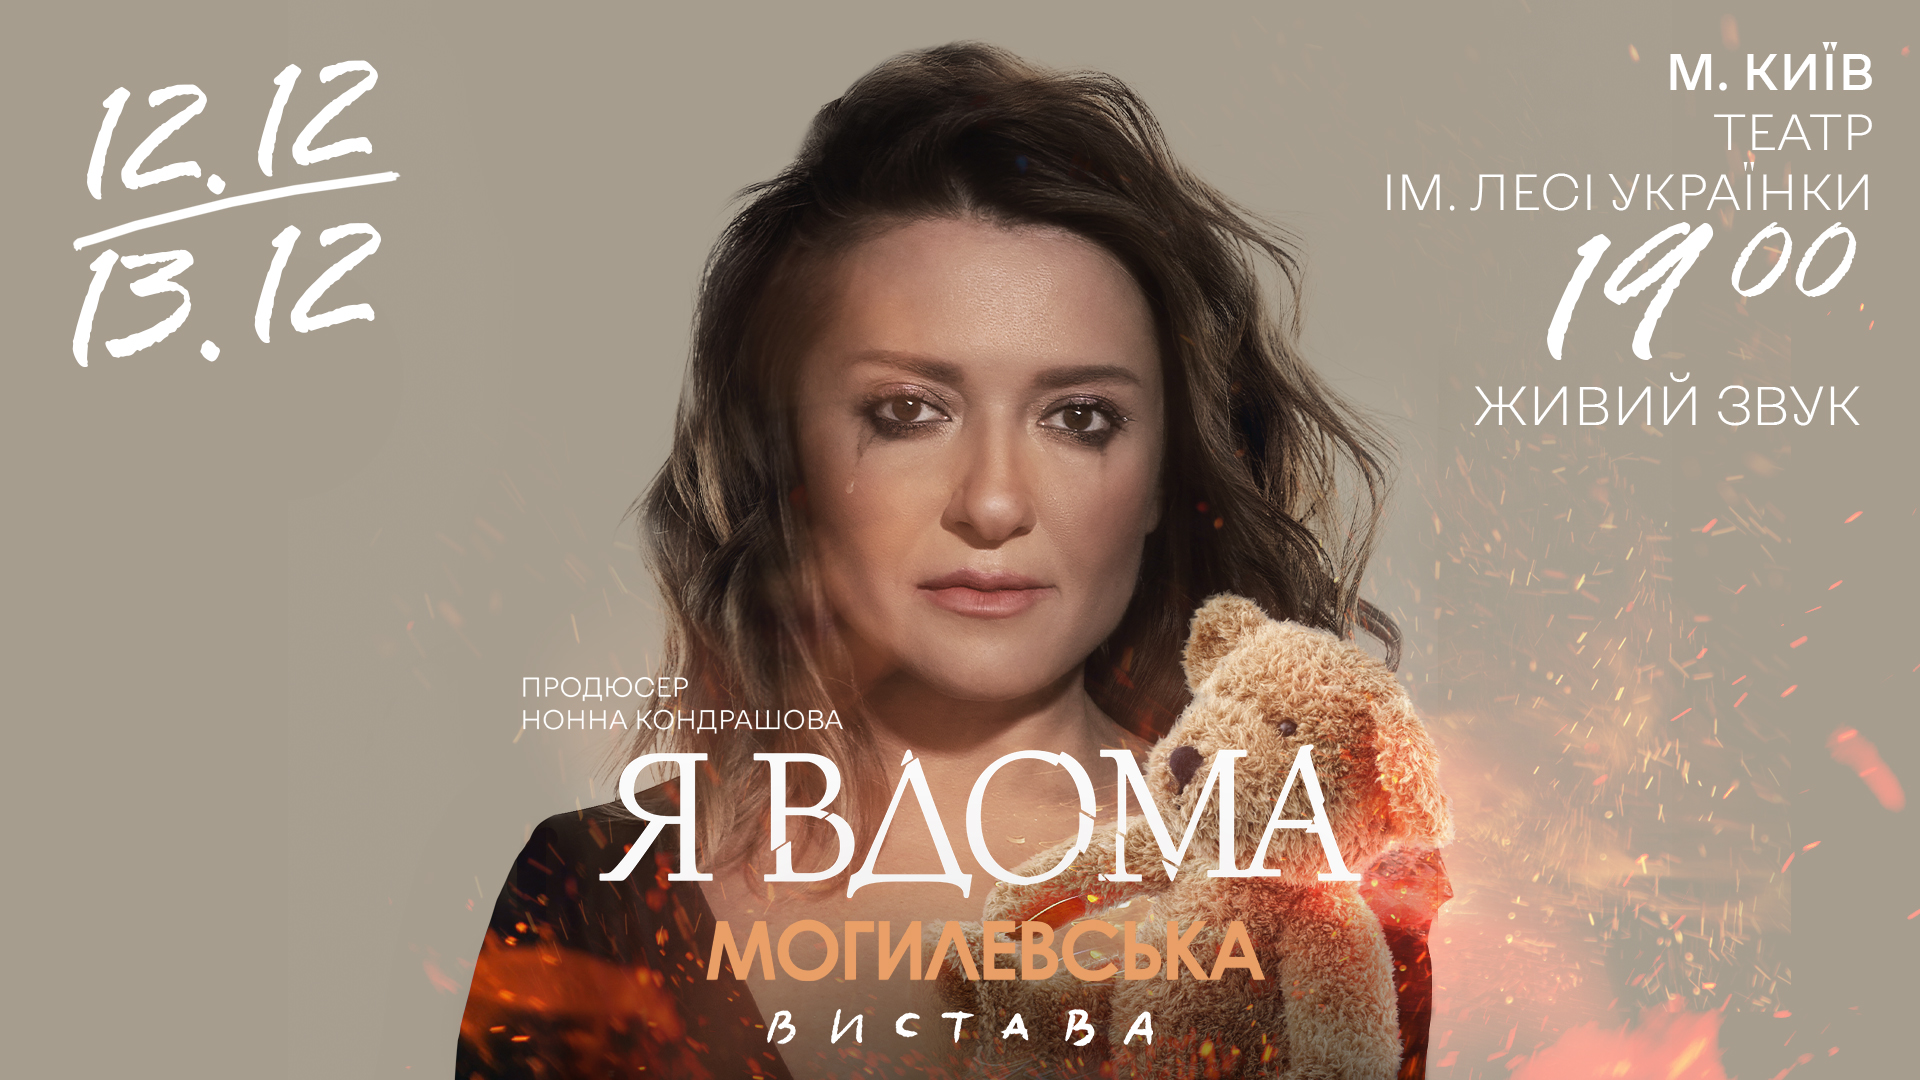 Наталія Могилевська попри блекаути зібрала у столиці аншлаг на моновиставі «Я вдома» та анонсувала нову театральну прем‘єру